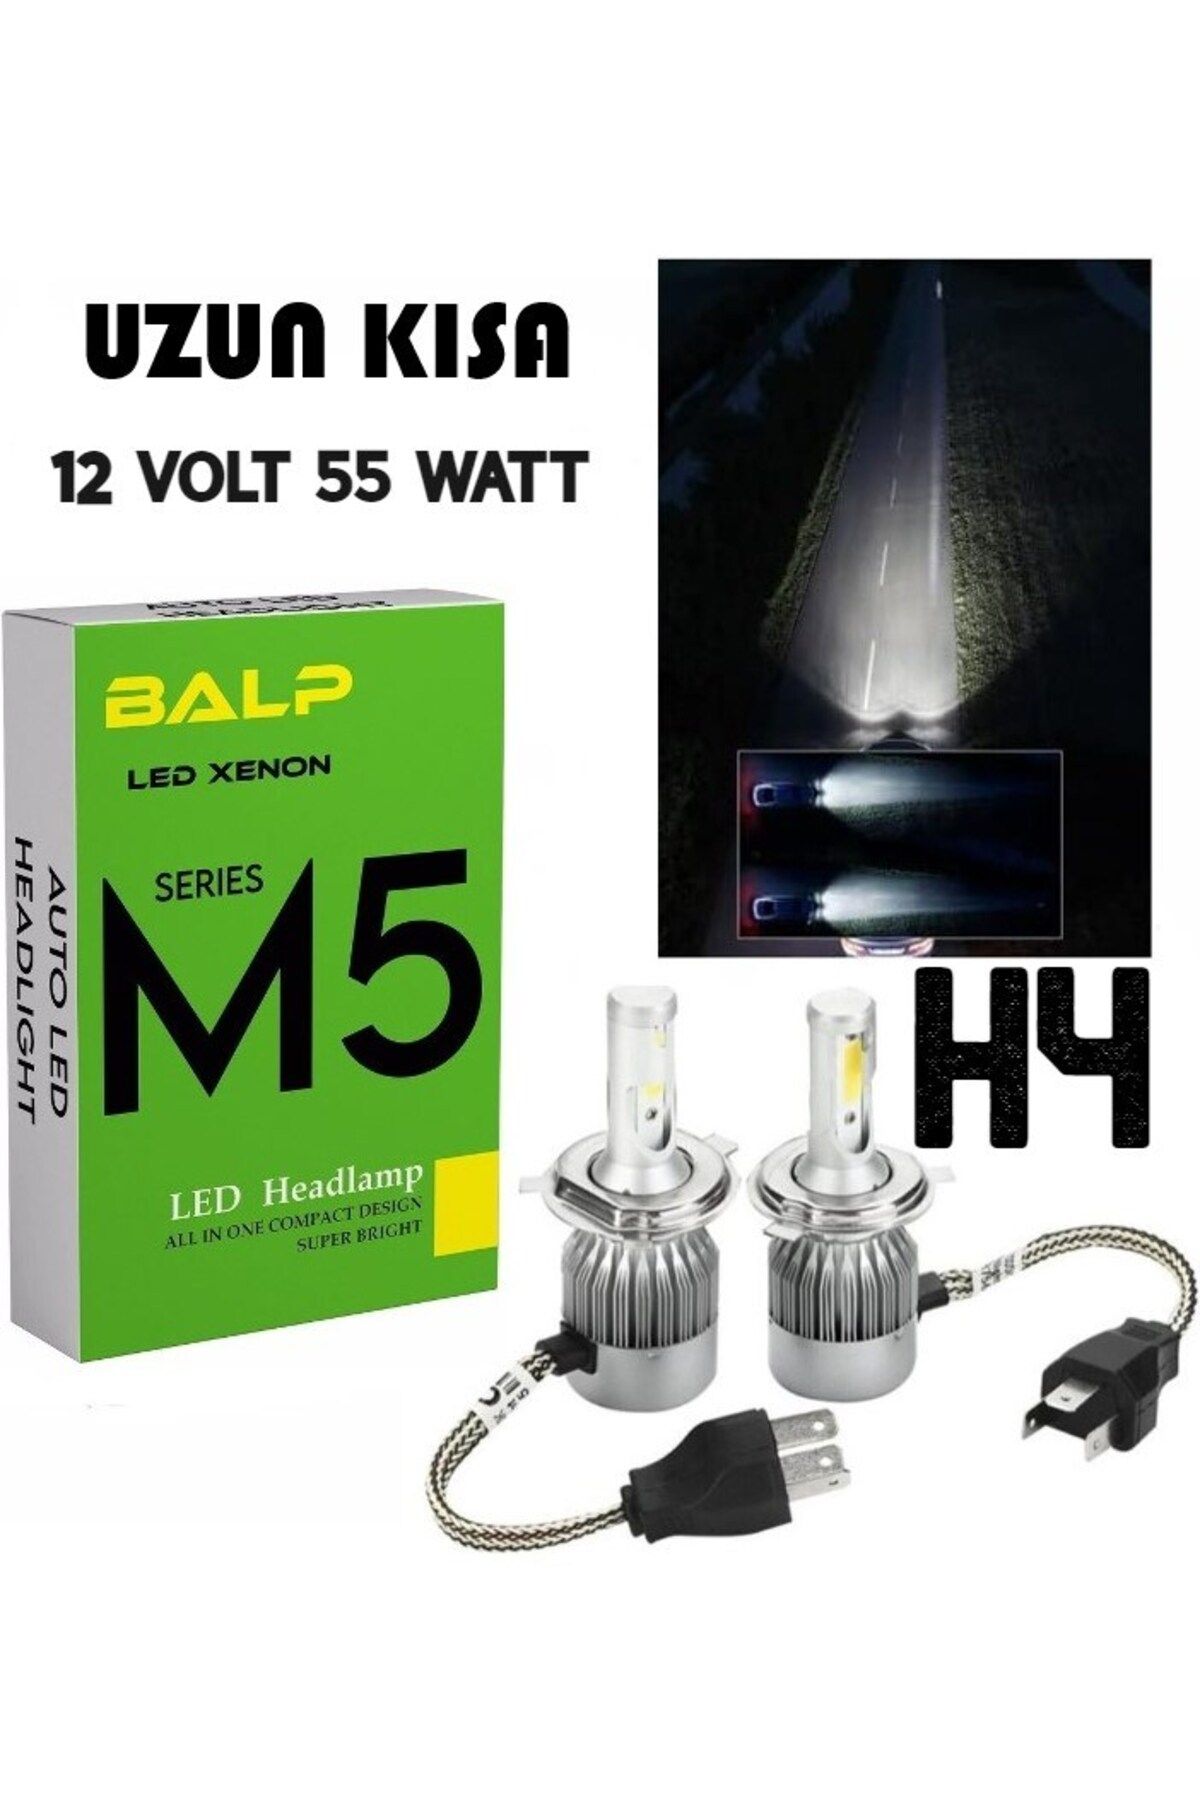 BALP Uzun Kısa H4 Led Xenon 55 Watt 11000LM 6500K 12 Volt